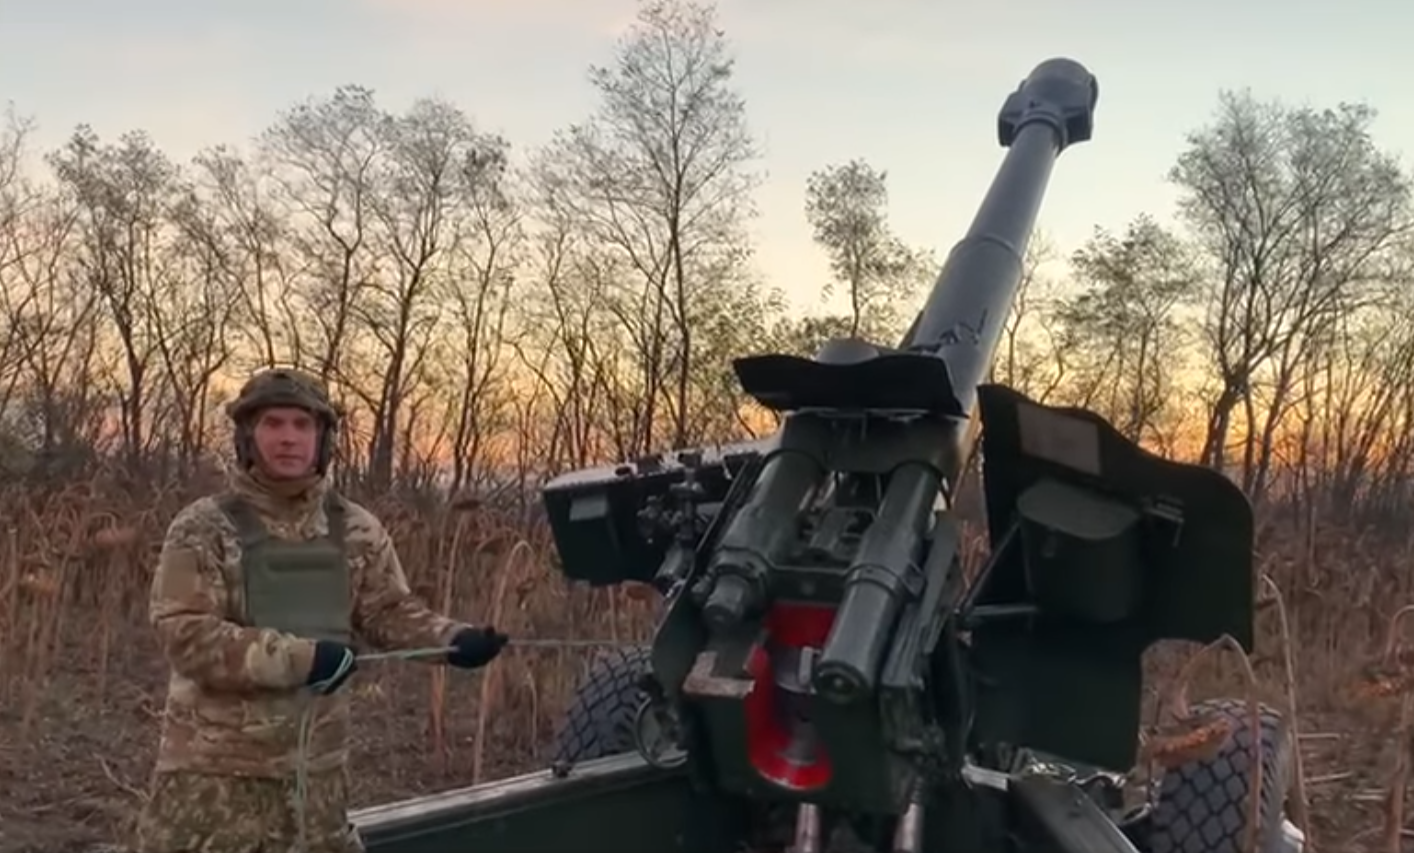 Бутусов опубликовал видео, на котором он стреляет из гаубицы.